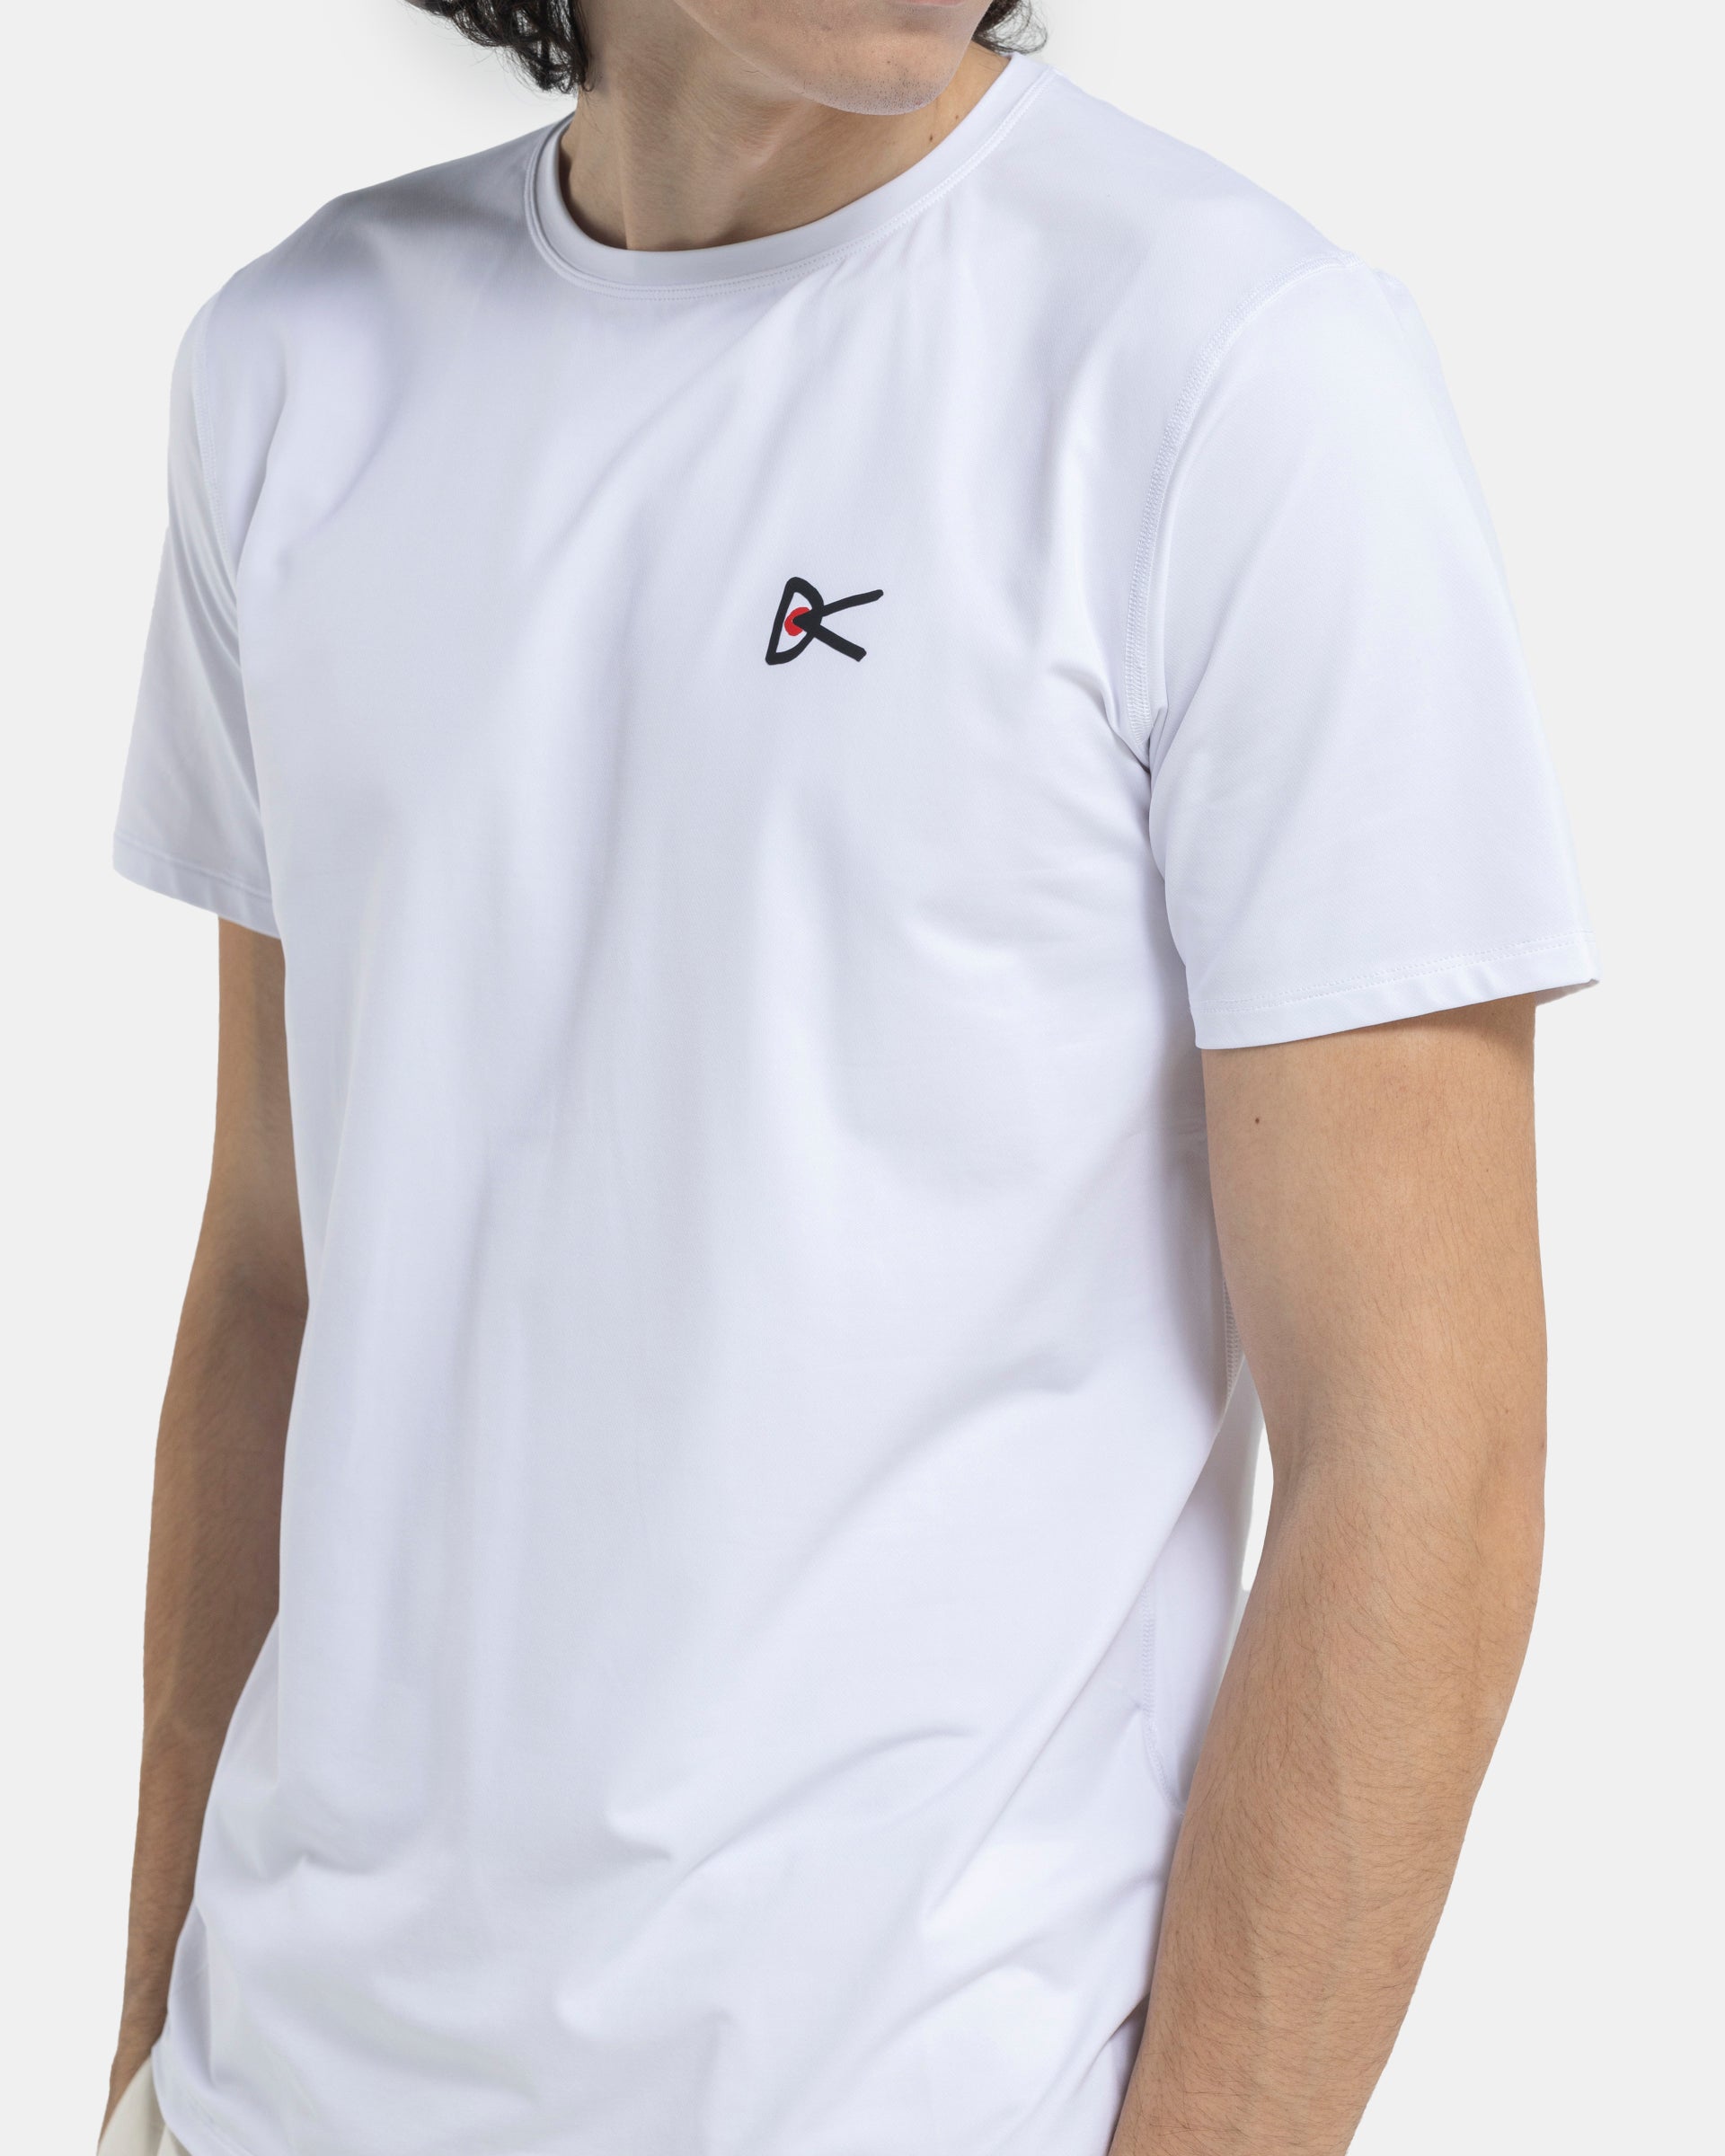 Deva Short Sleeve T-Shirt in White